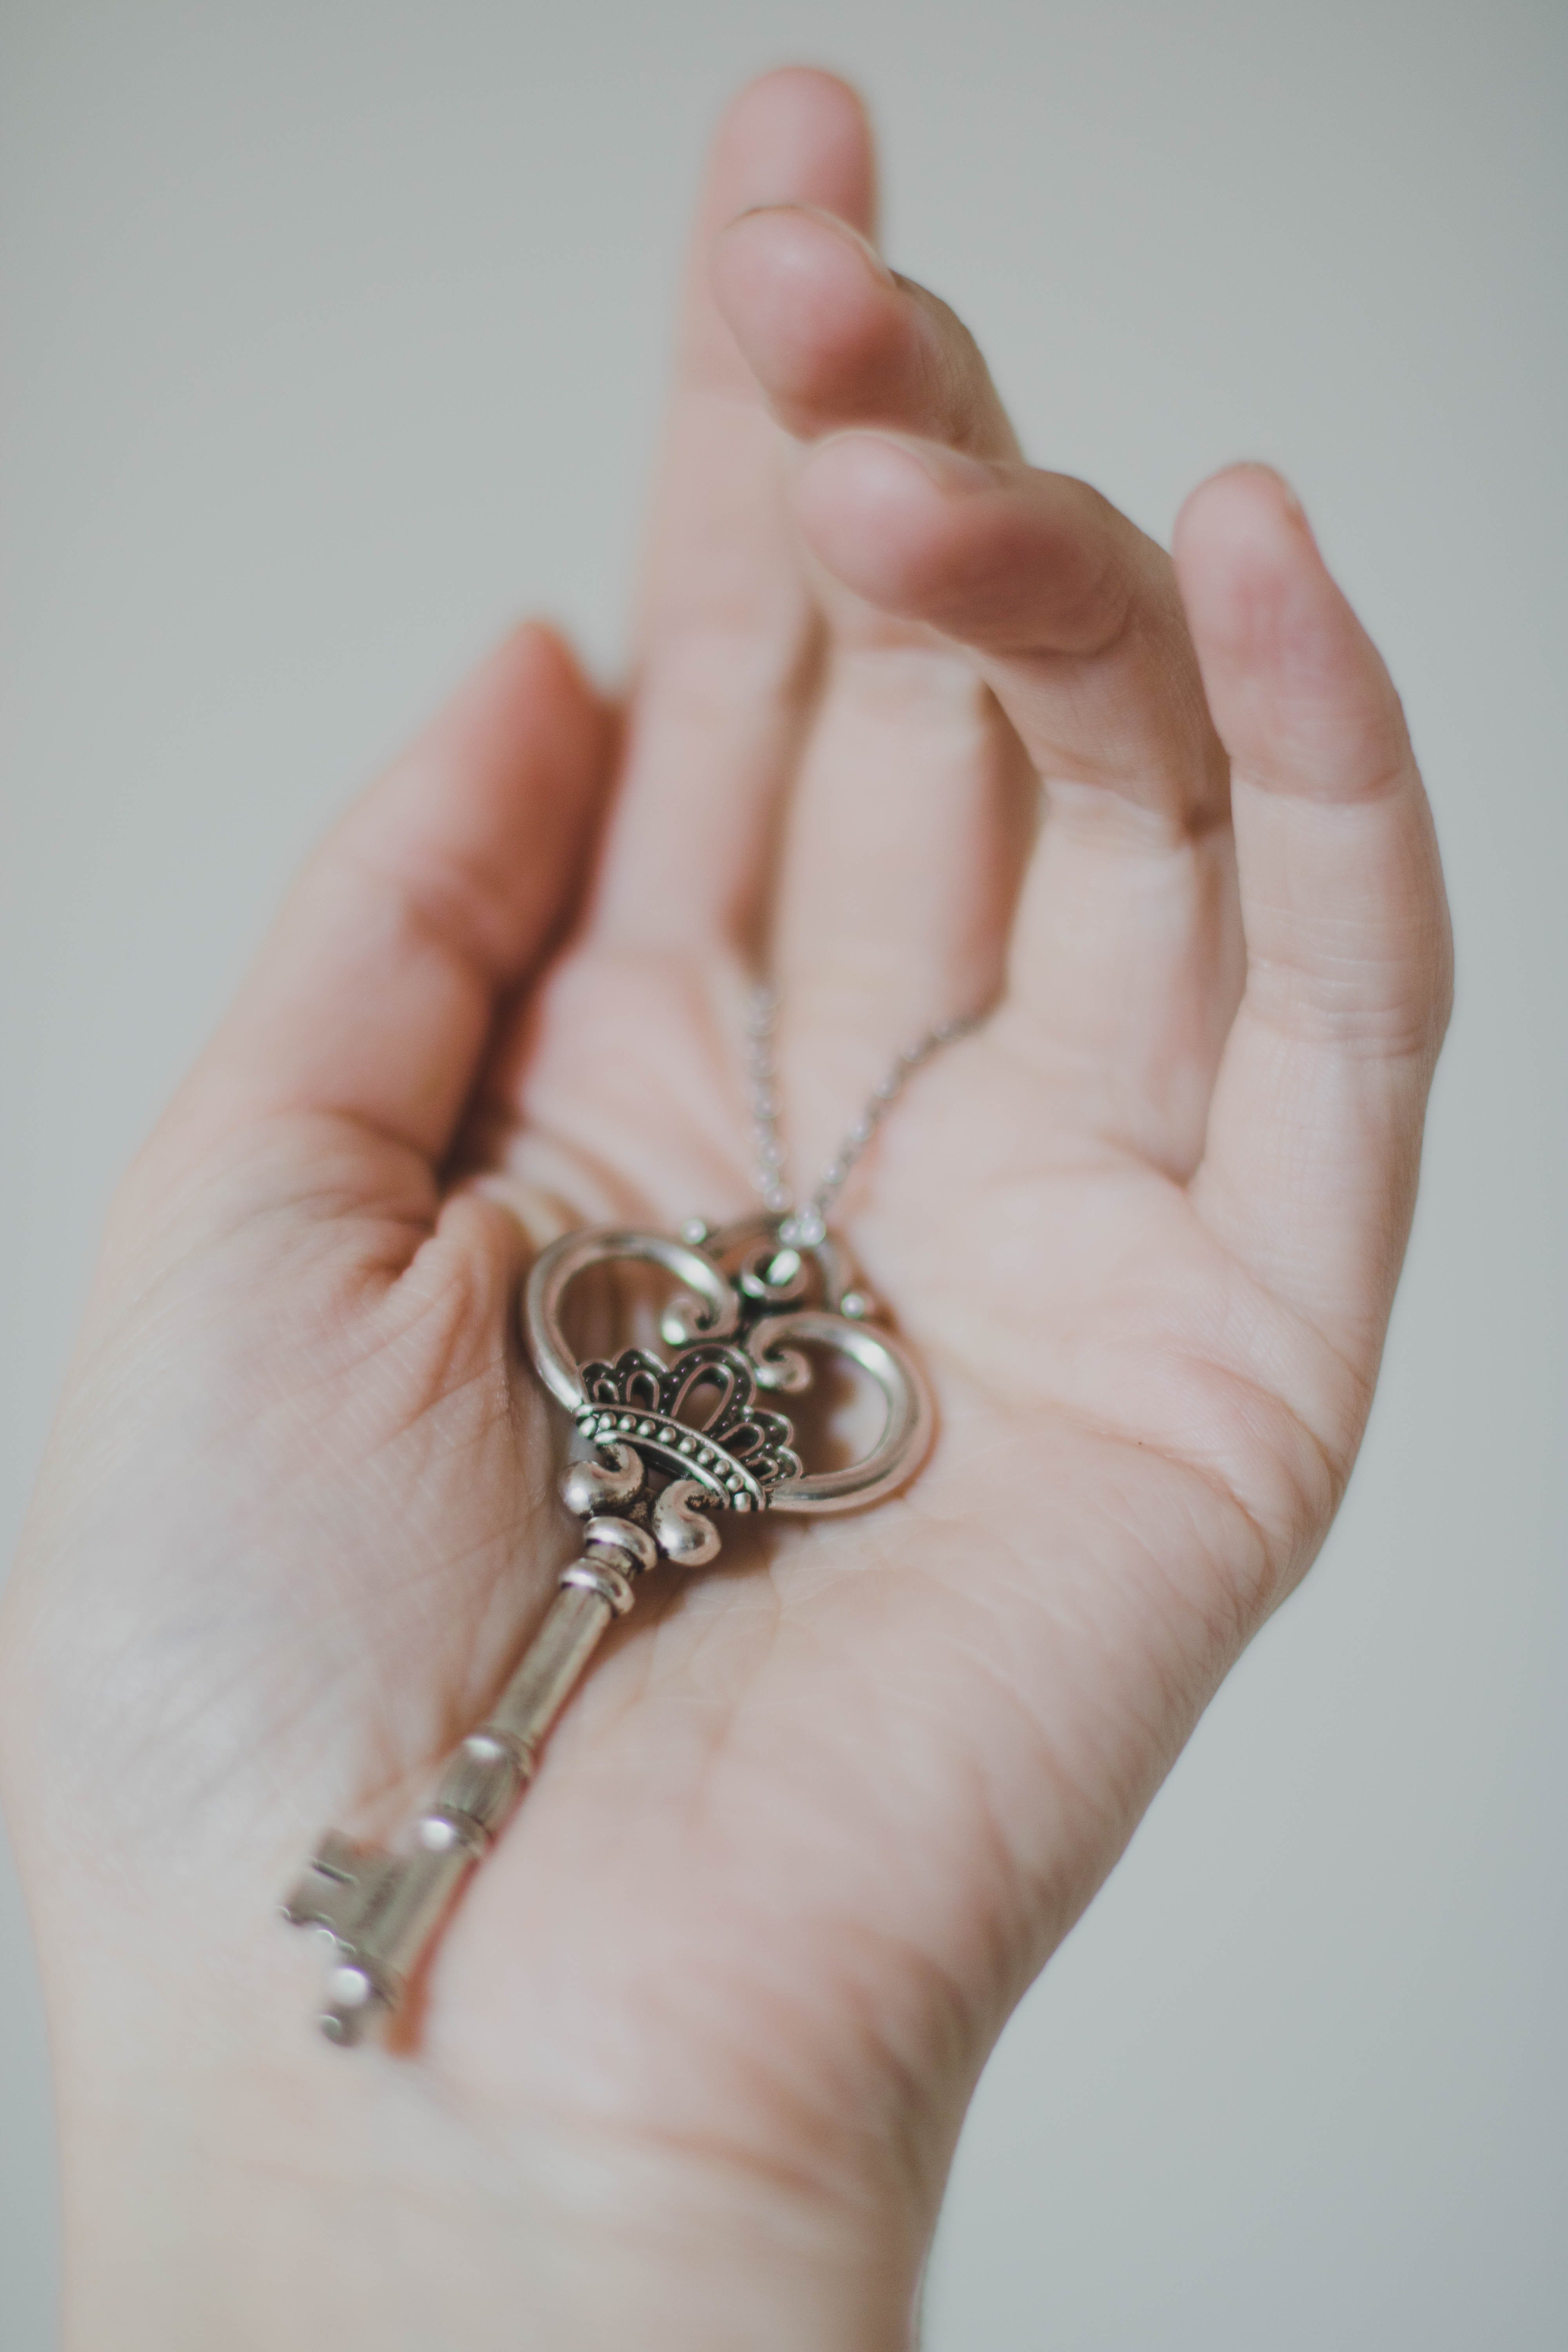 Mia a trouvé une petite clé collée sur le mot que sa grand-mère lui a donné. | Source : Pexels